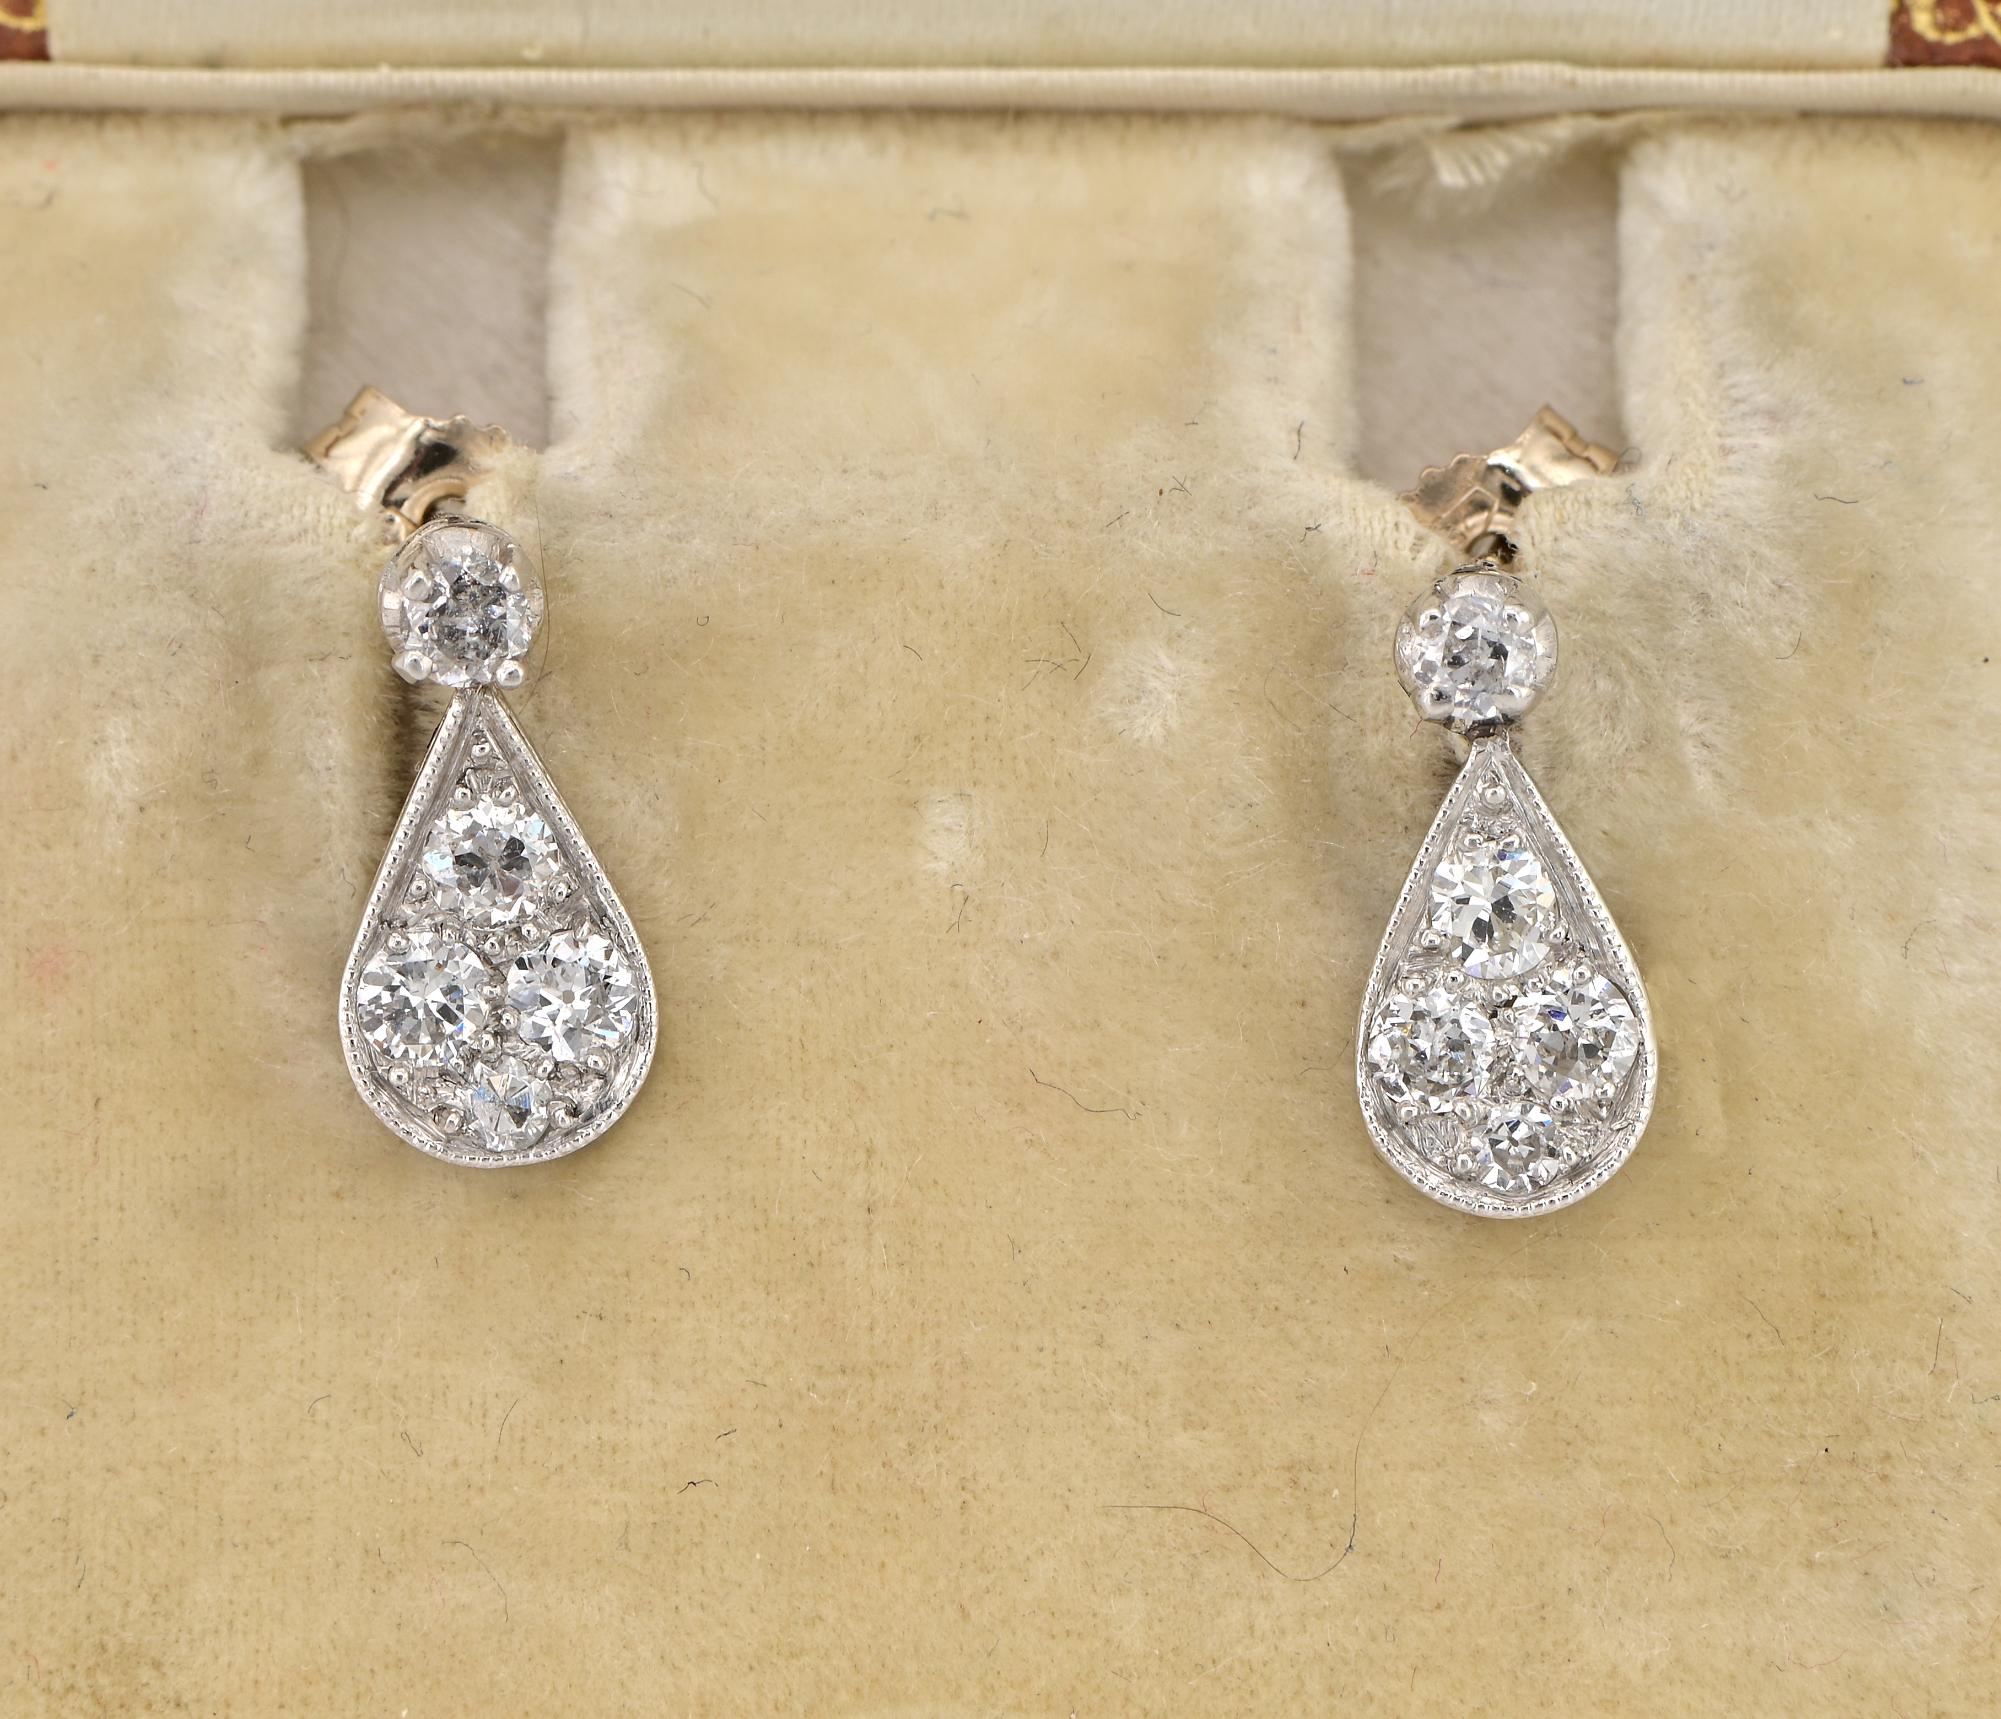 Einfach herrlich
Diese süßen Art Deco Periode Diamant petit Tropfen Ohrringe sind 1930 ca
Handgefertigt als Unikat aus massivem Platin, Schmetterlingsverschlüsse in Gold, beide markiert
Charmante Tropfenform, gekrönt von einem winzigen Diamanten,